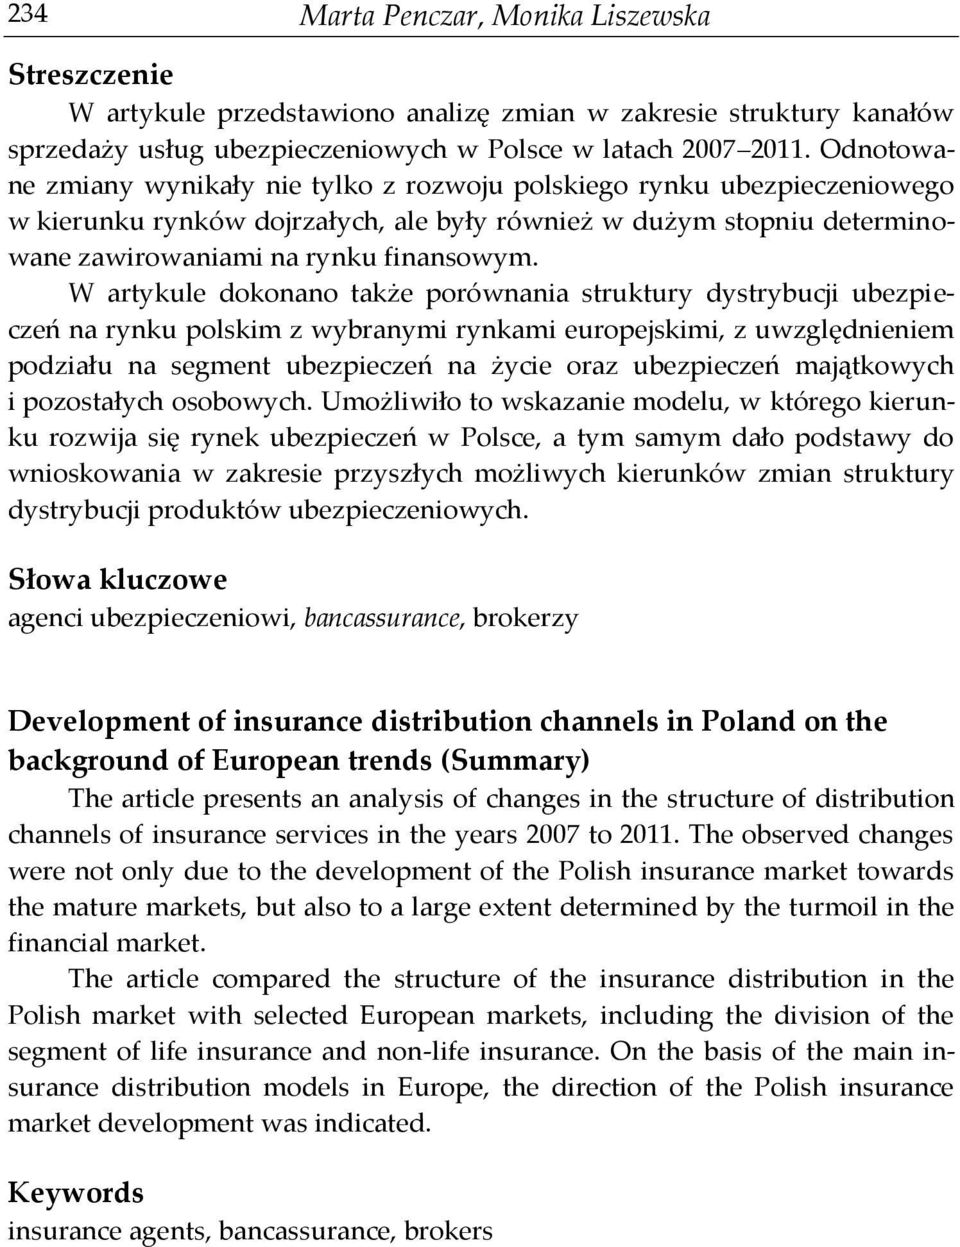 W artykule dokonano także porównania struktury dystrybucji ubezpieczeń na rynku polskim z wybranymi rynkami europejskimi, z uwzględnieniem podziału na segment ubezpieczeń na życie oraz ubezpieczeń